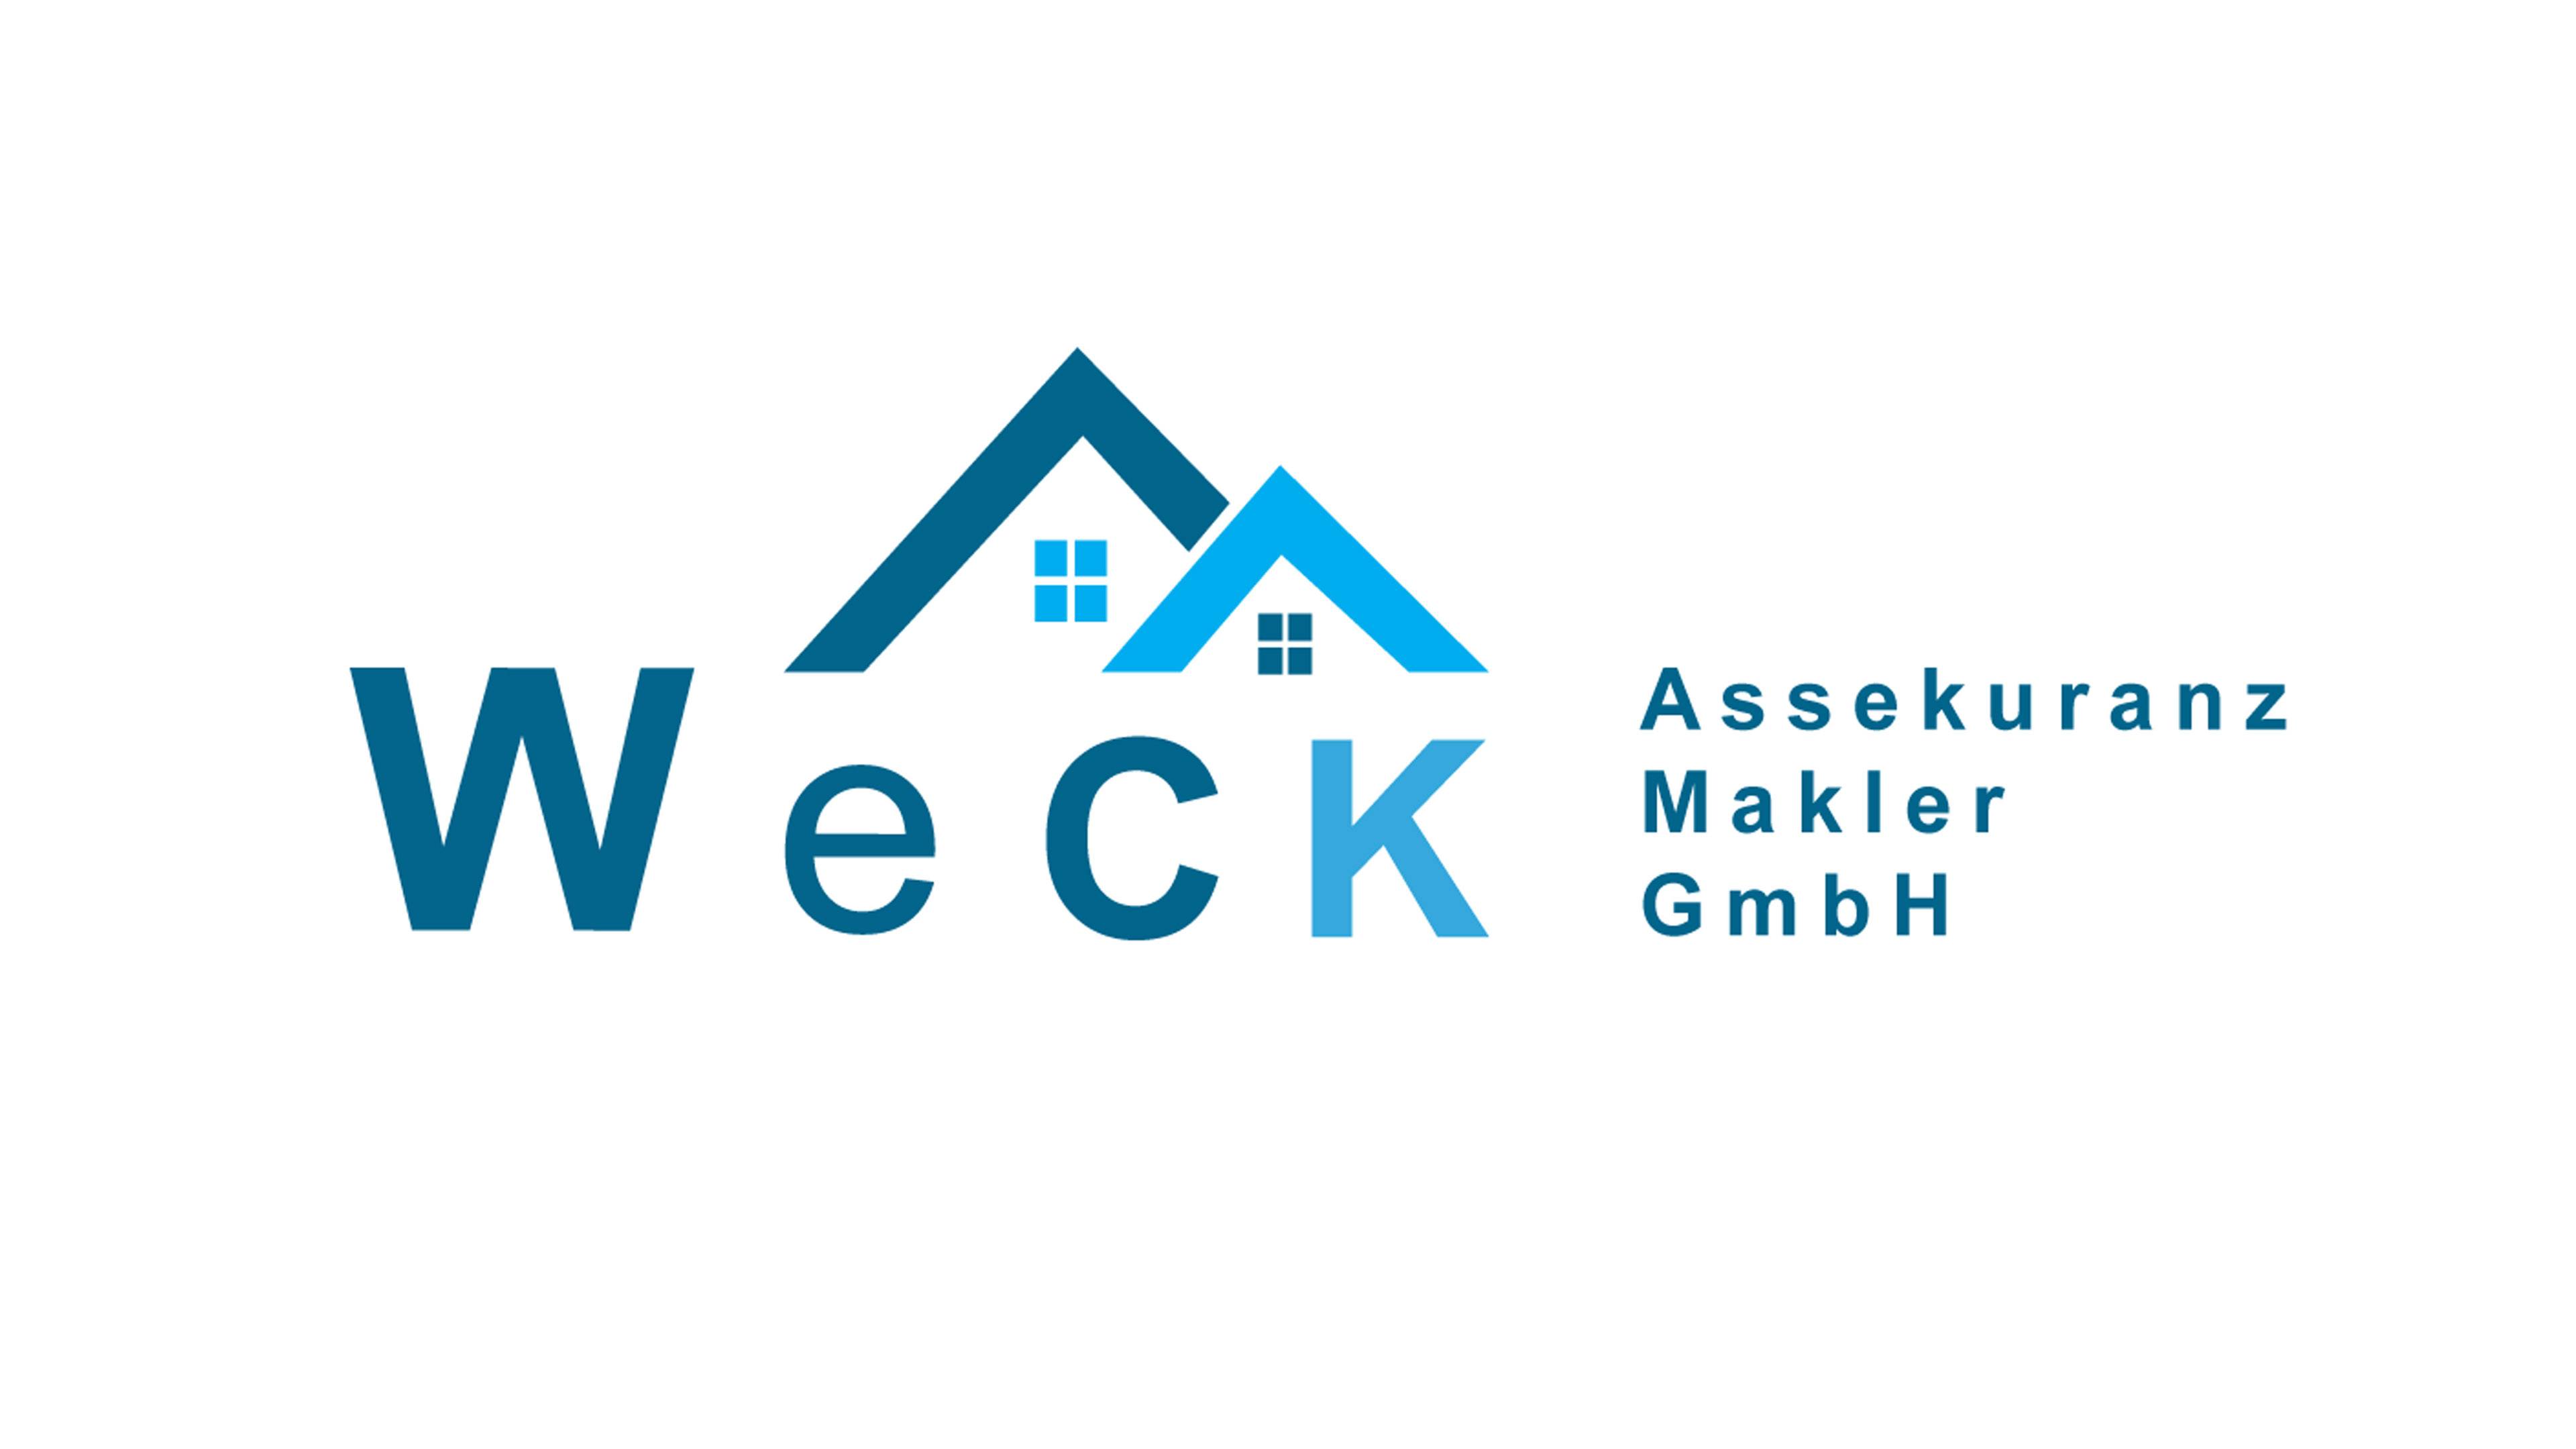 Bild 2 WeCK Assekuranz Makler GmbH in Warngau